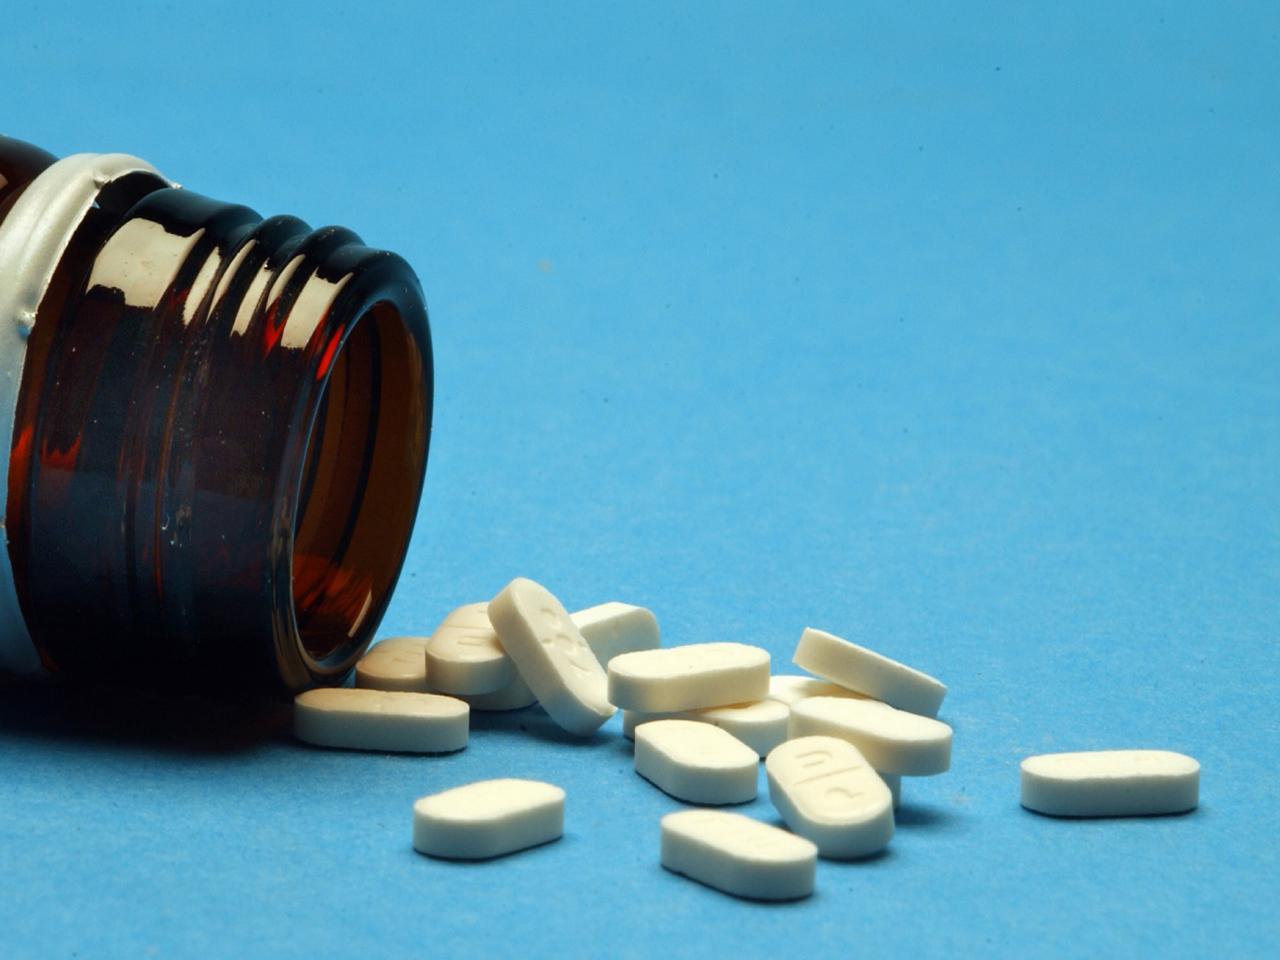 Farmaci, i consigli di Altroconsumo per spendere meno senza rischi  